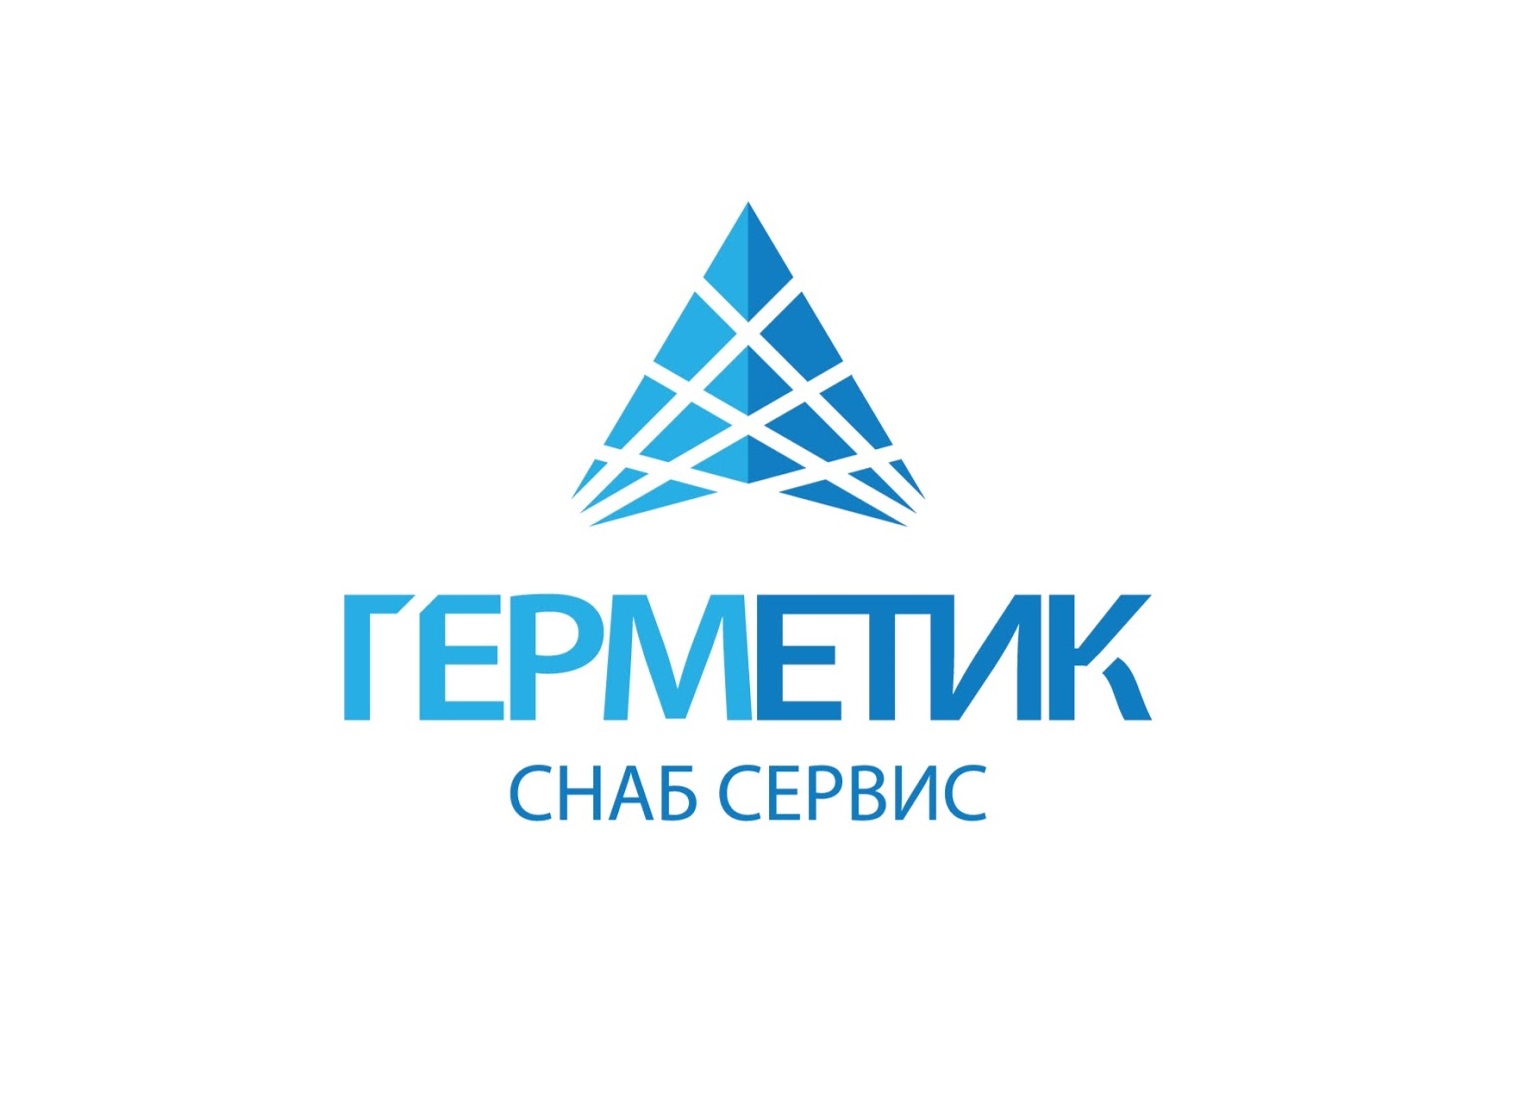 "Герметик Снаб Сервис" (Россия) - производство продуктов для профессионального монтажа, герметизации и изоляции в различных отраслях строительства